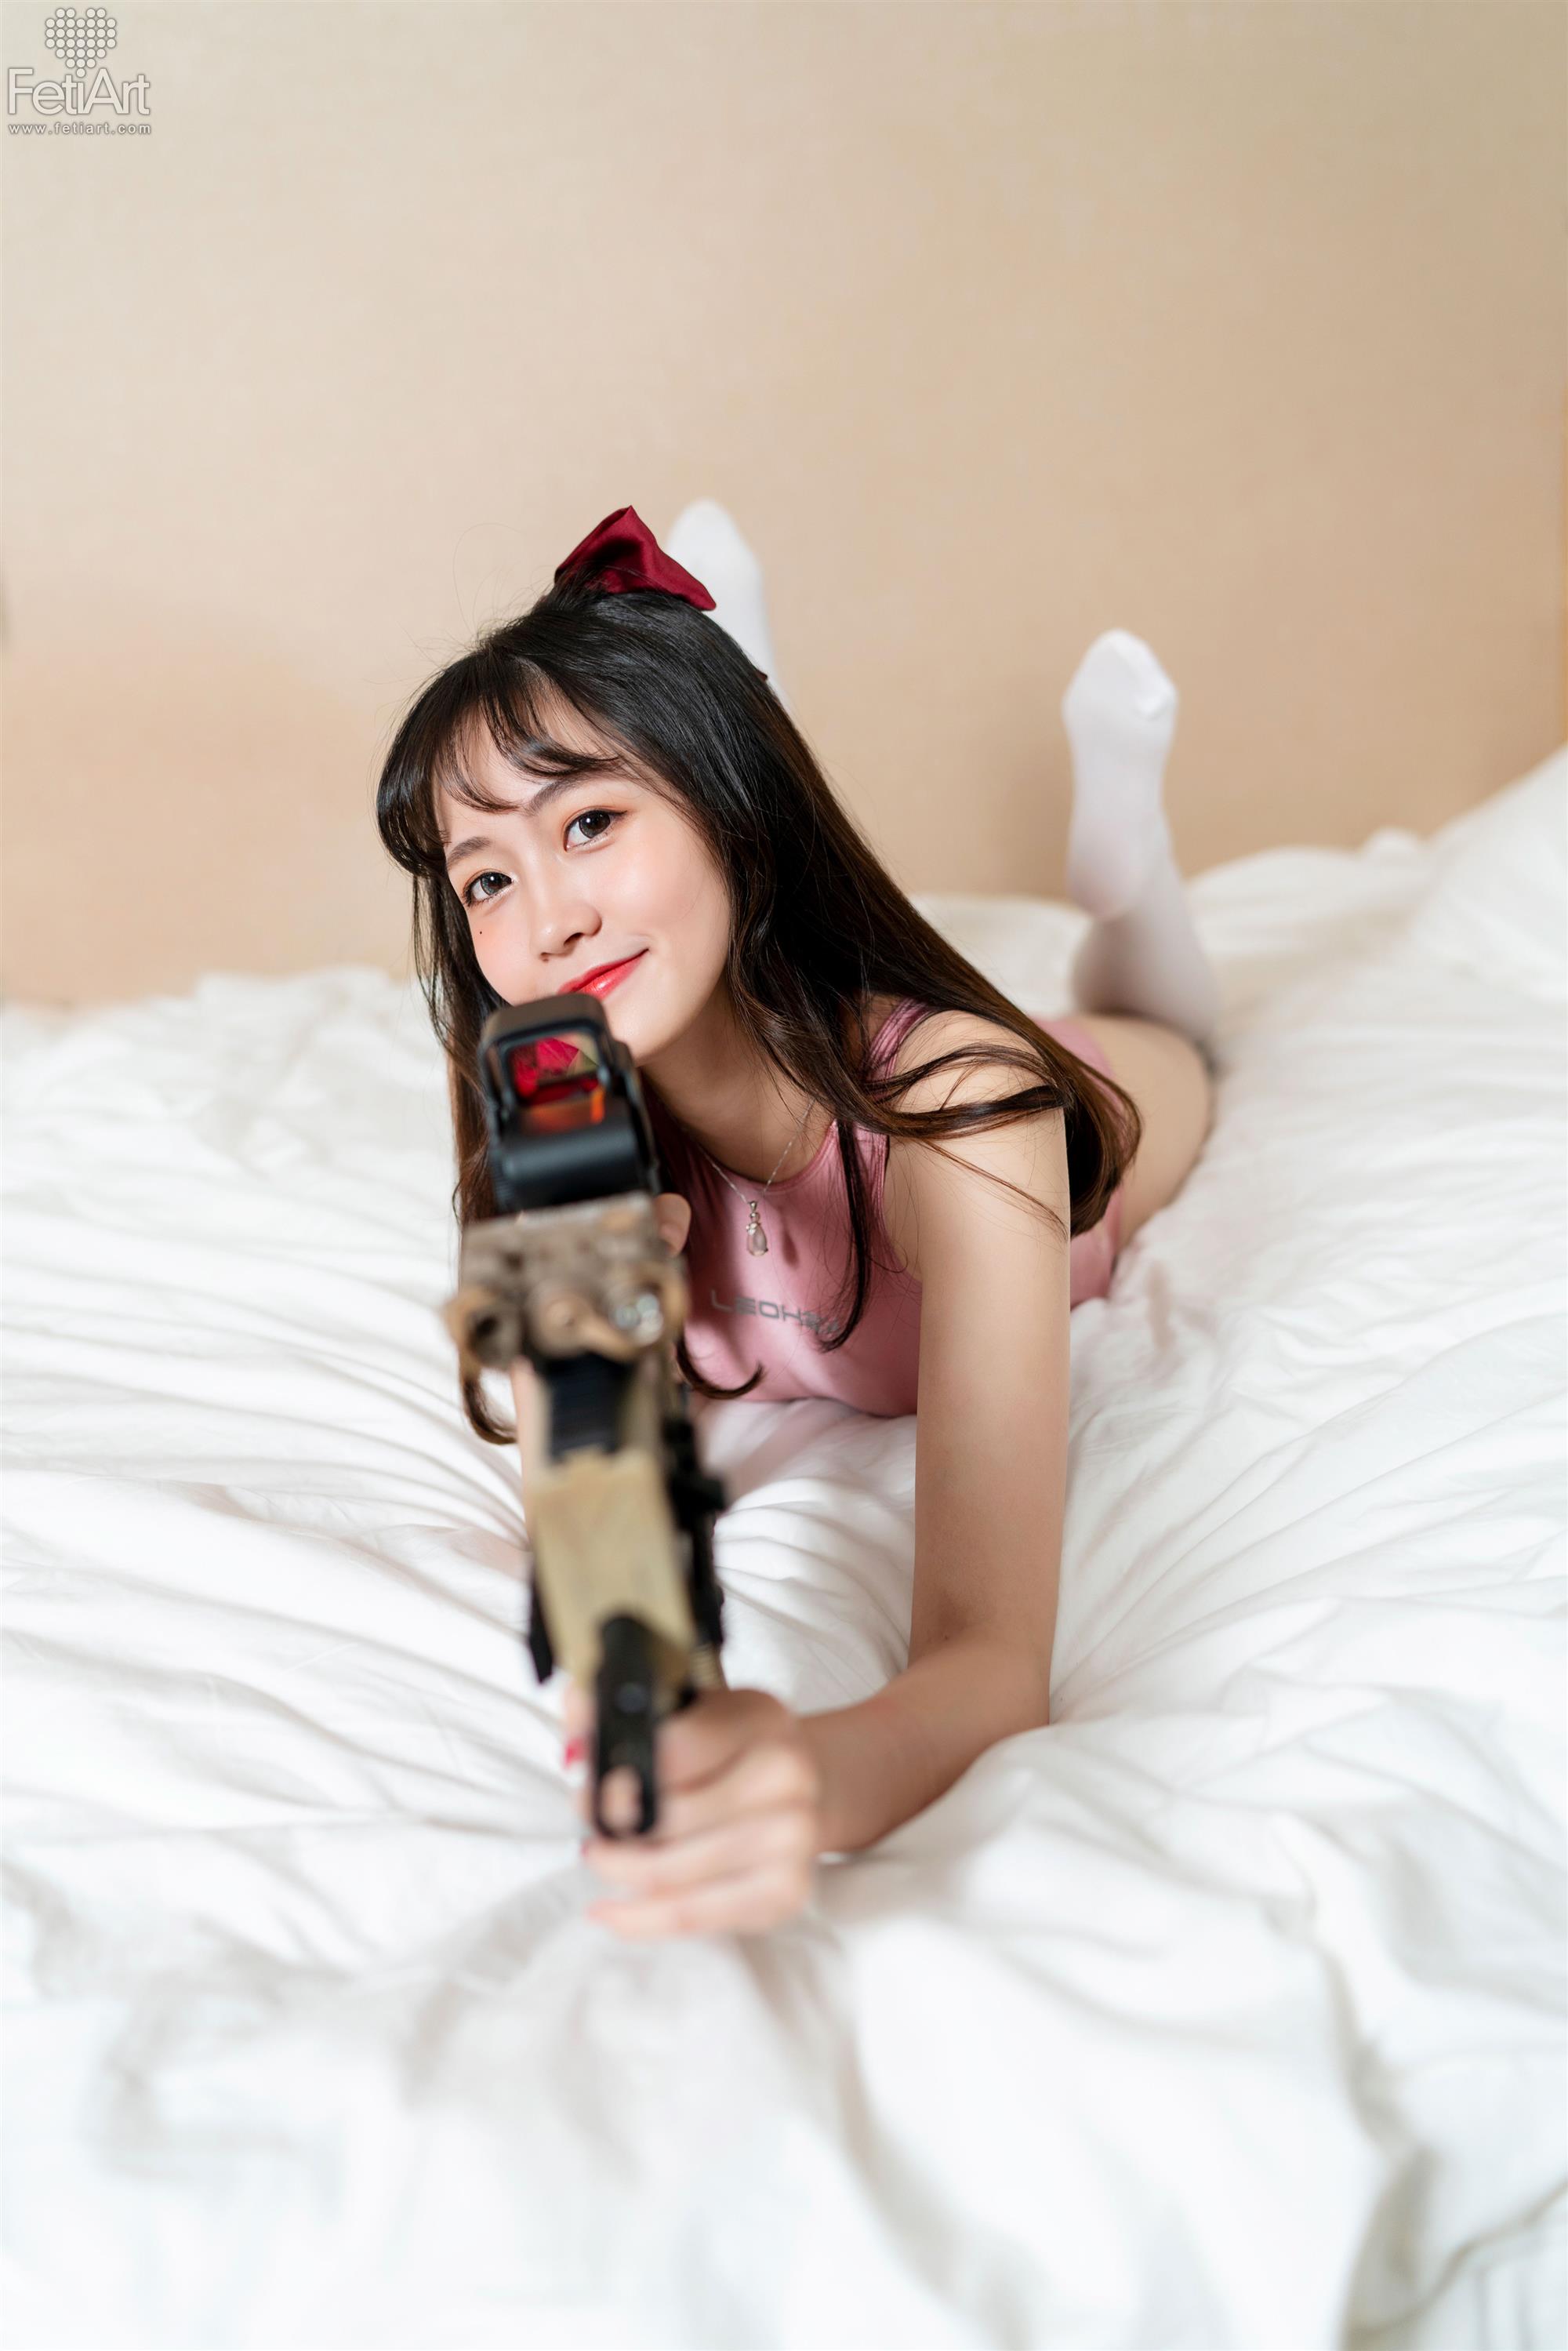 FetiArt 尚物集 No.019 Gunslinger Girl MODEL Mmi - 17.jpg